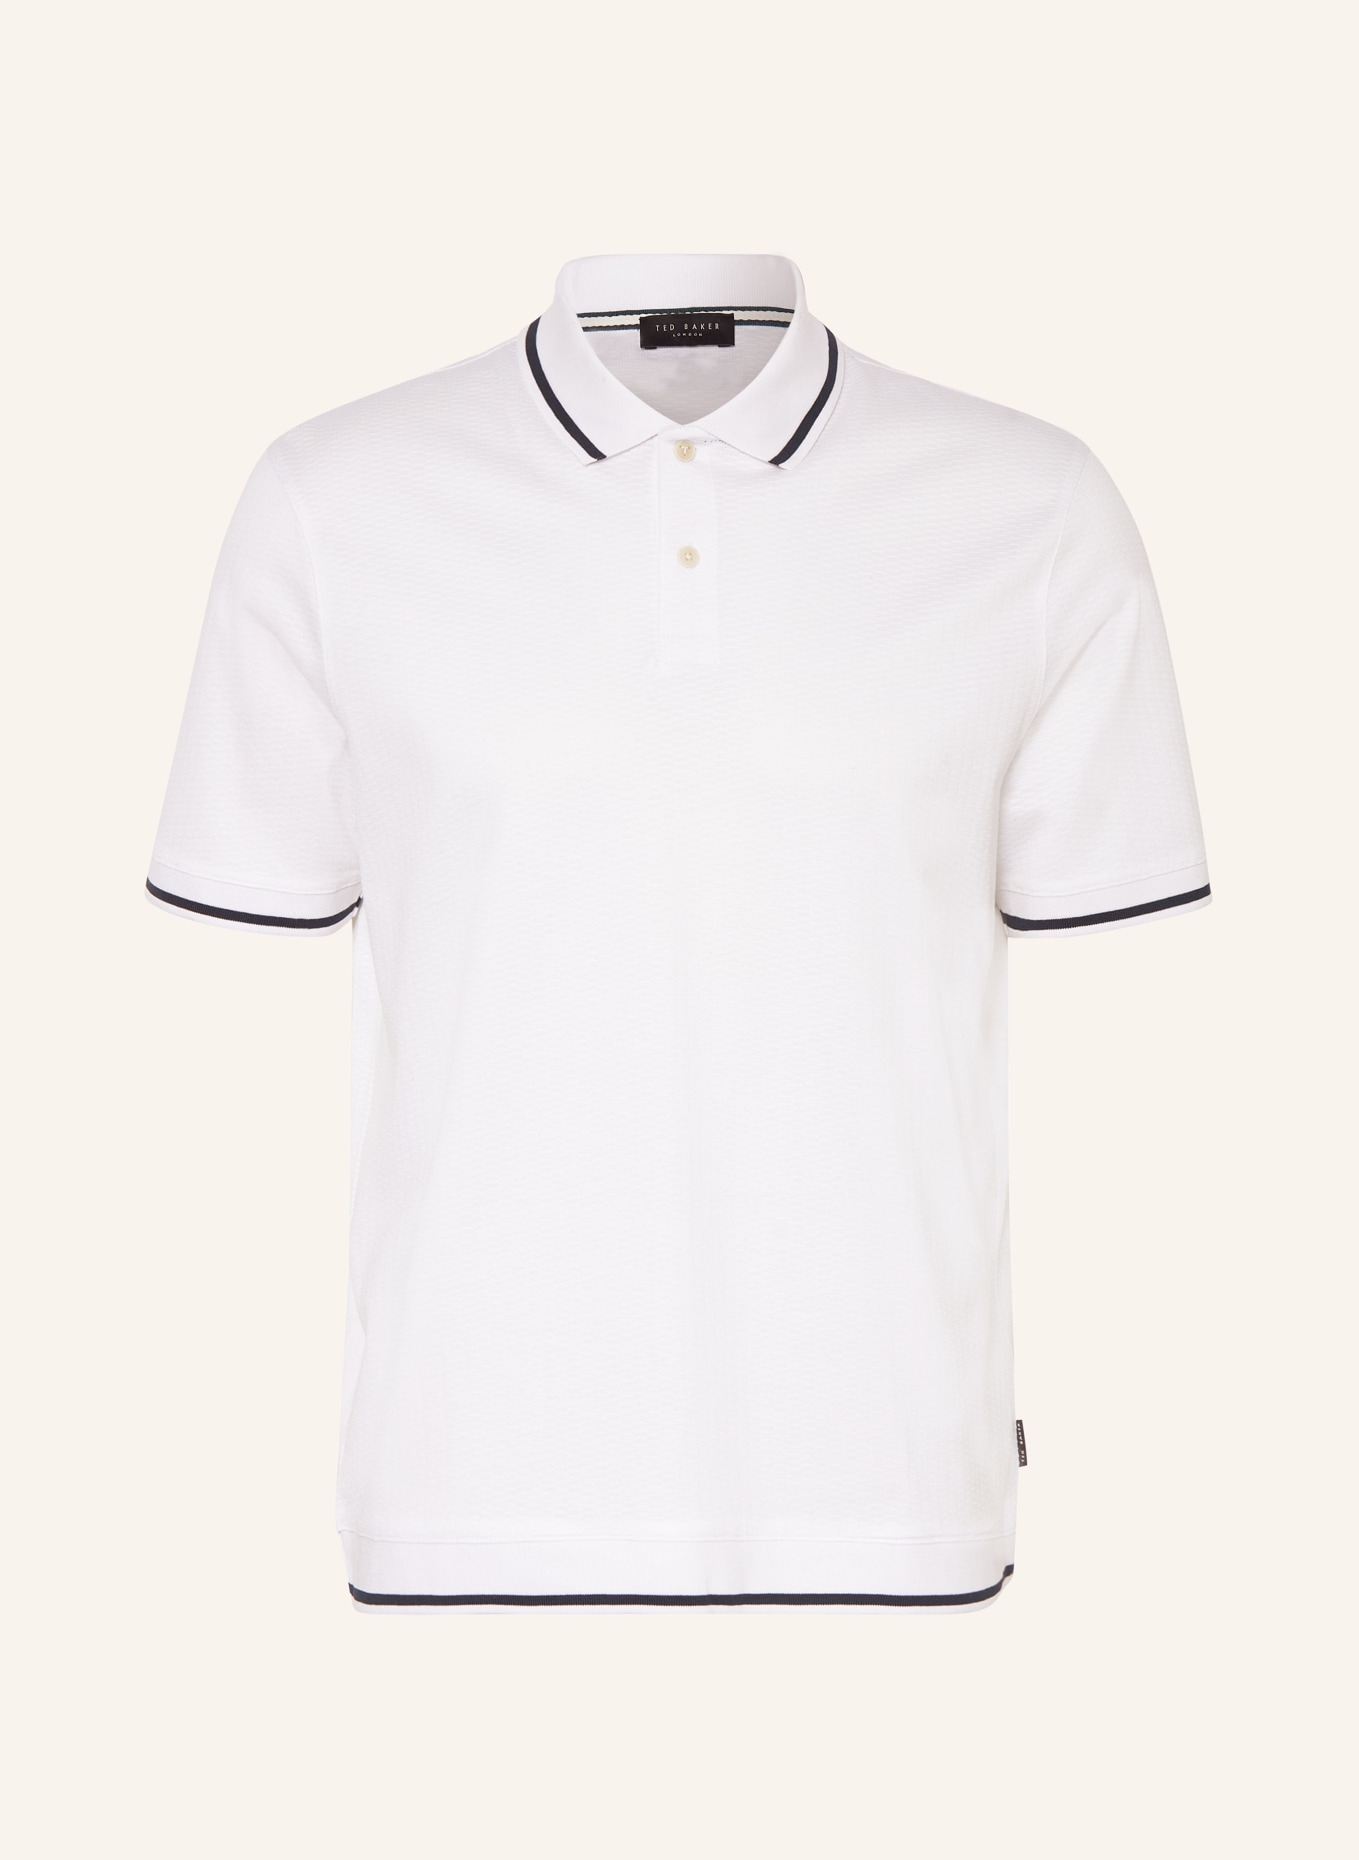 TED BAKER Piqué-Poloshirt ERWEN Regular Fit, Farbe: WEISS/ SCHWARZ (Bild 1)